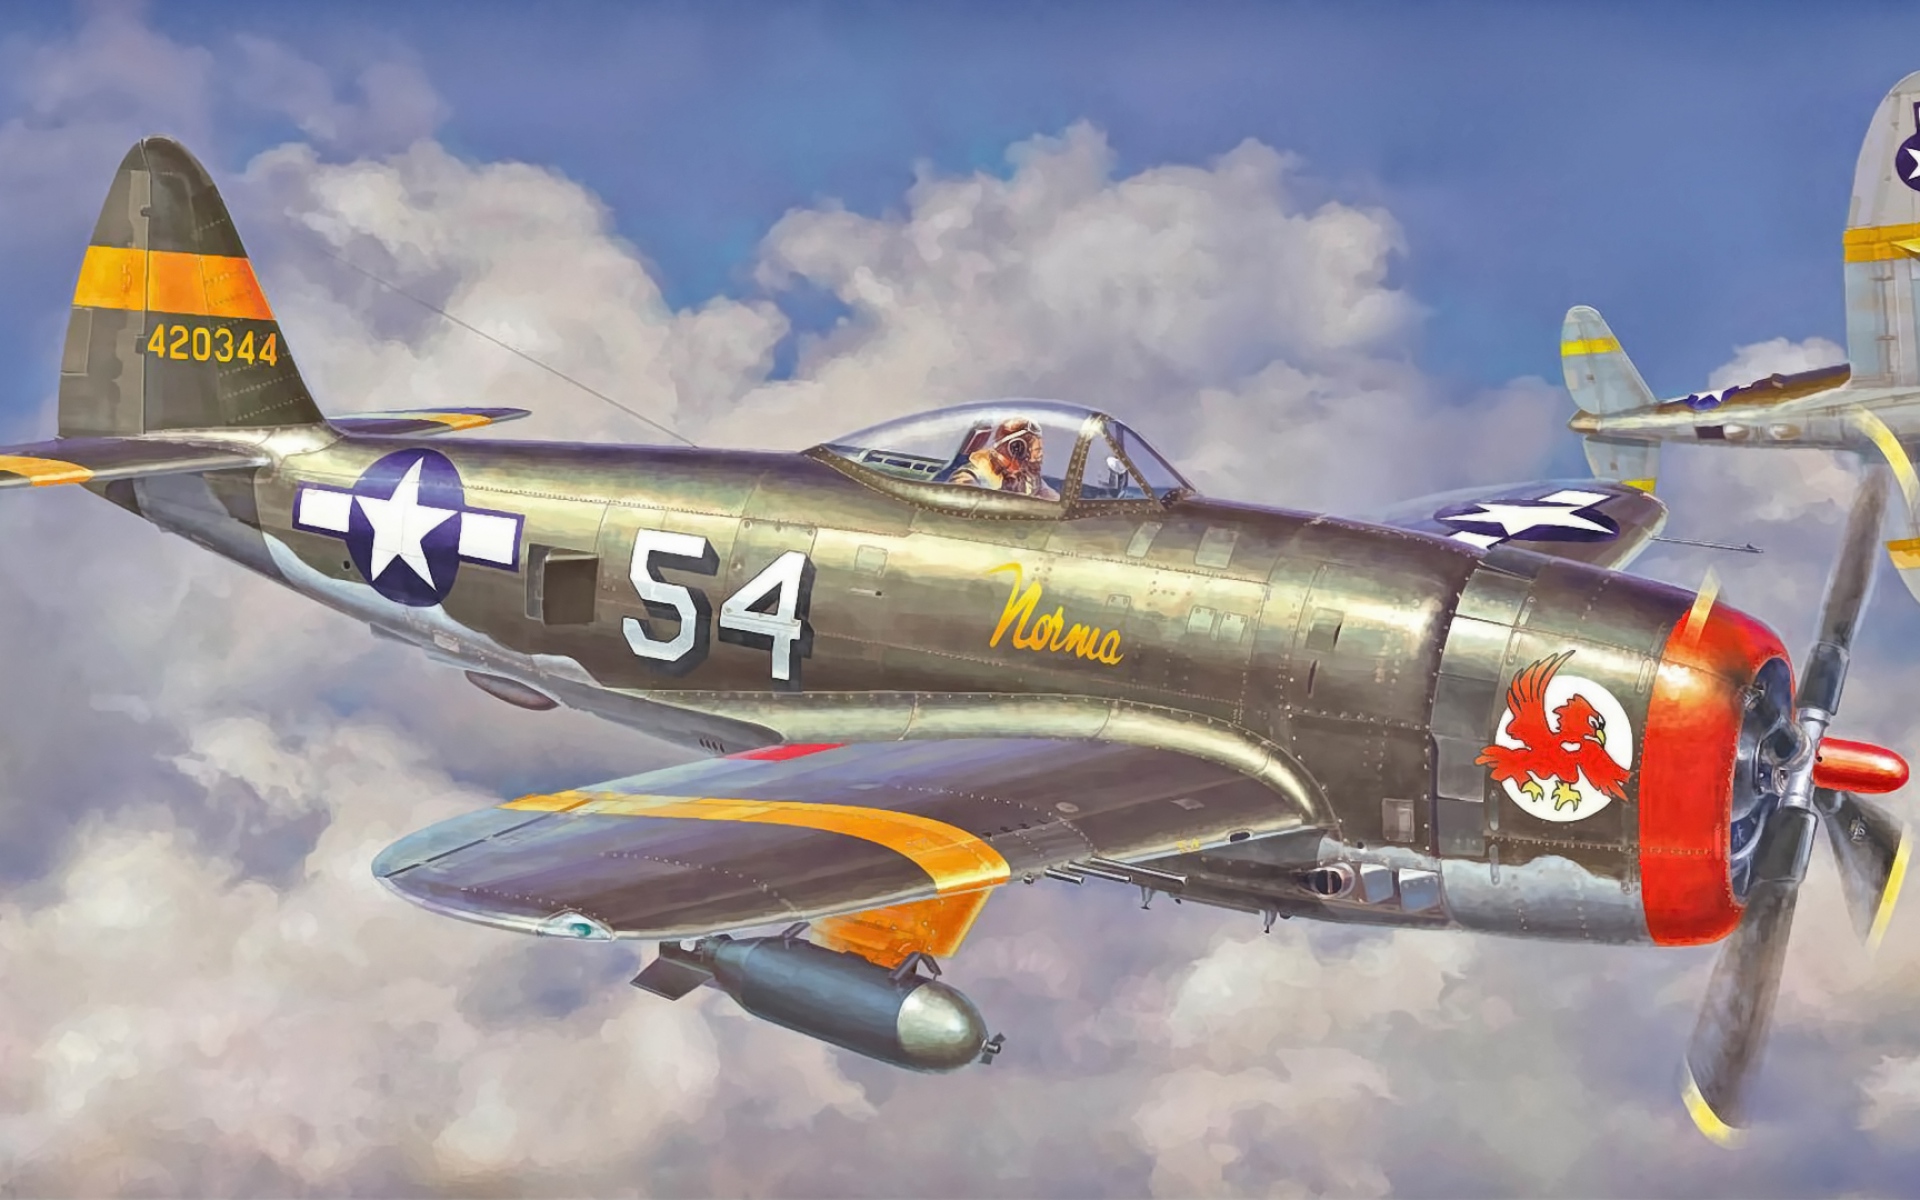 Картинки P 47 thunderbolt, hasegawa, истребитель, самолет фото и обои на рабочий стол